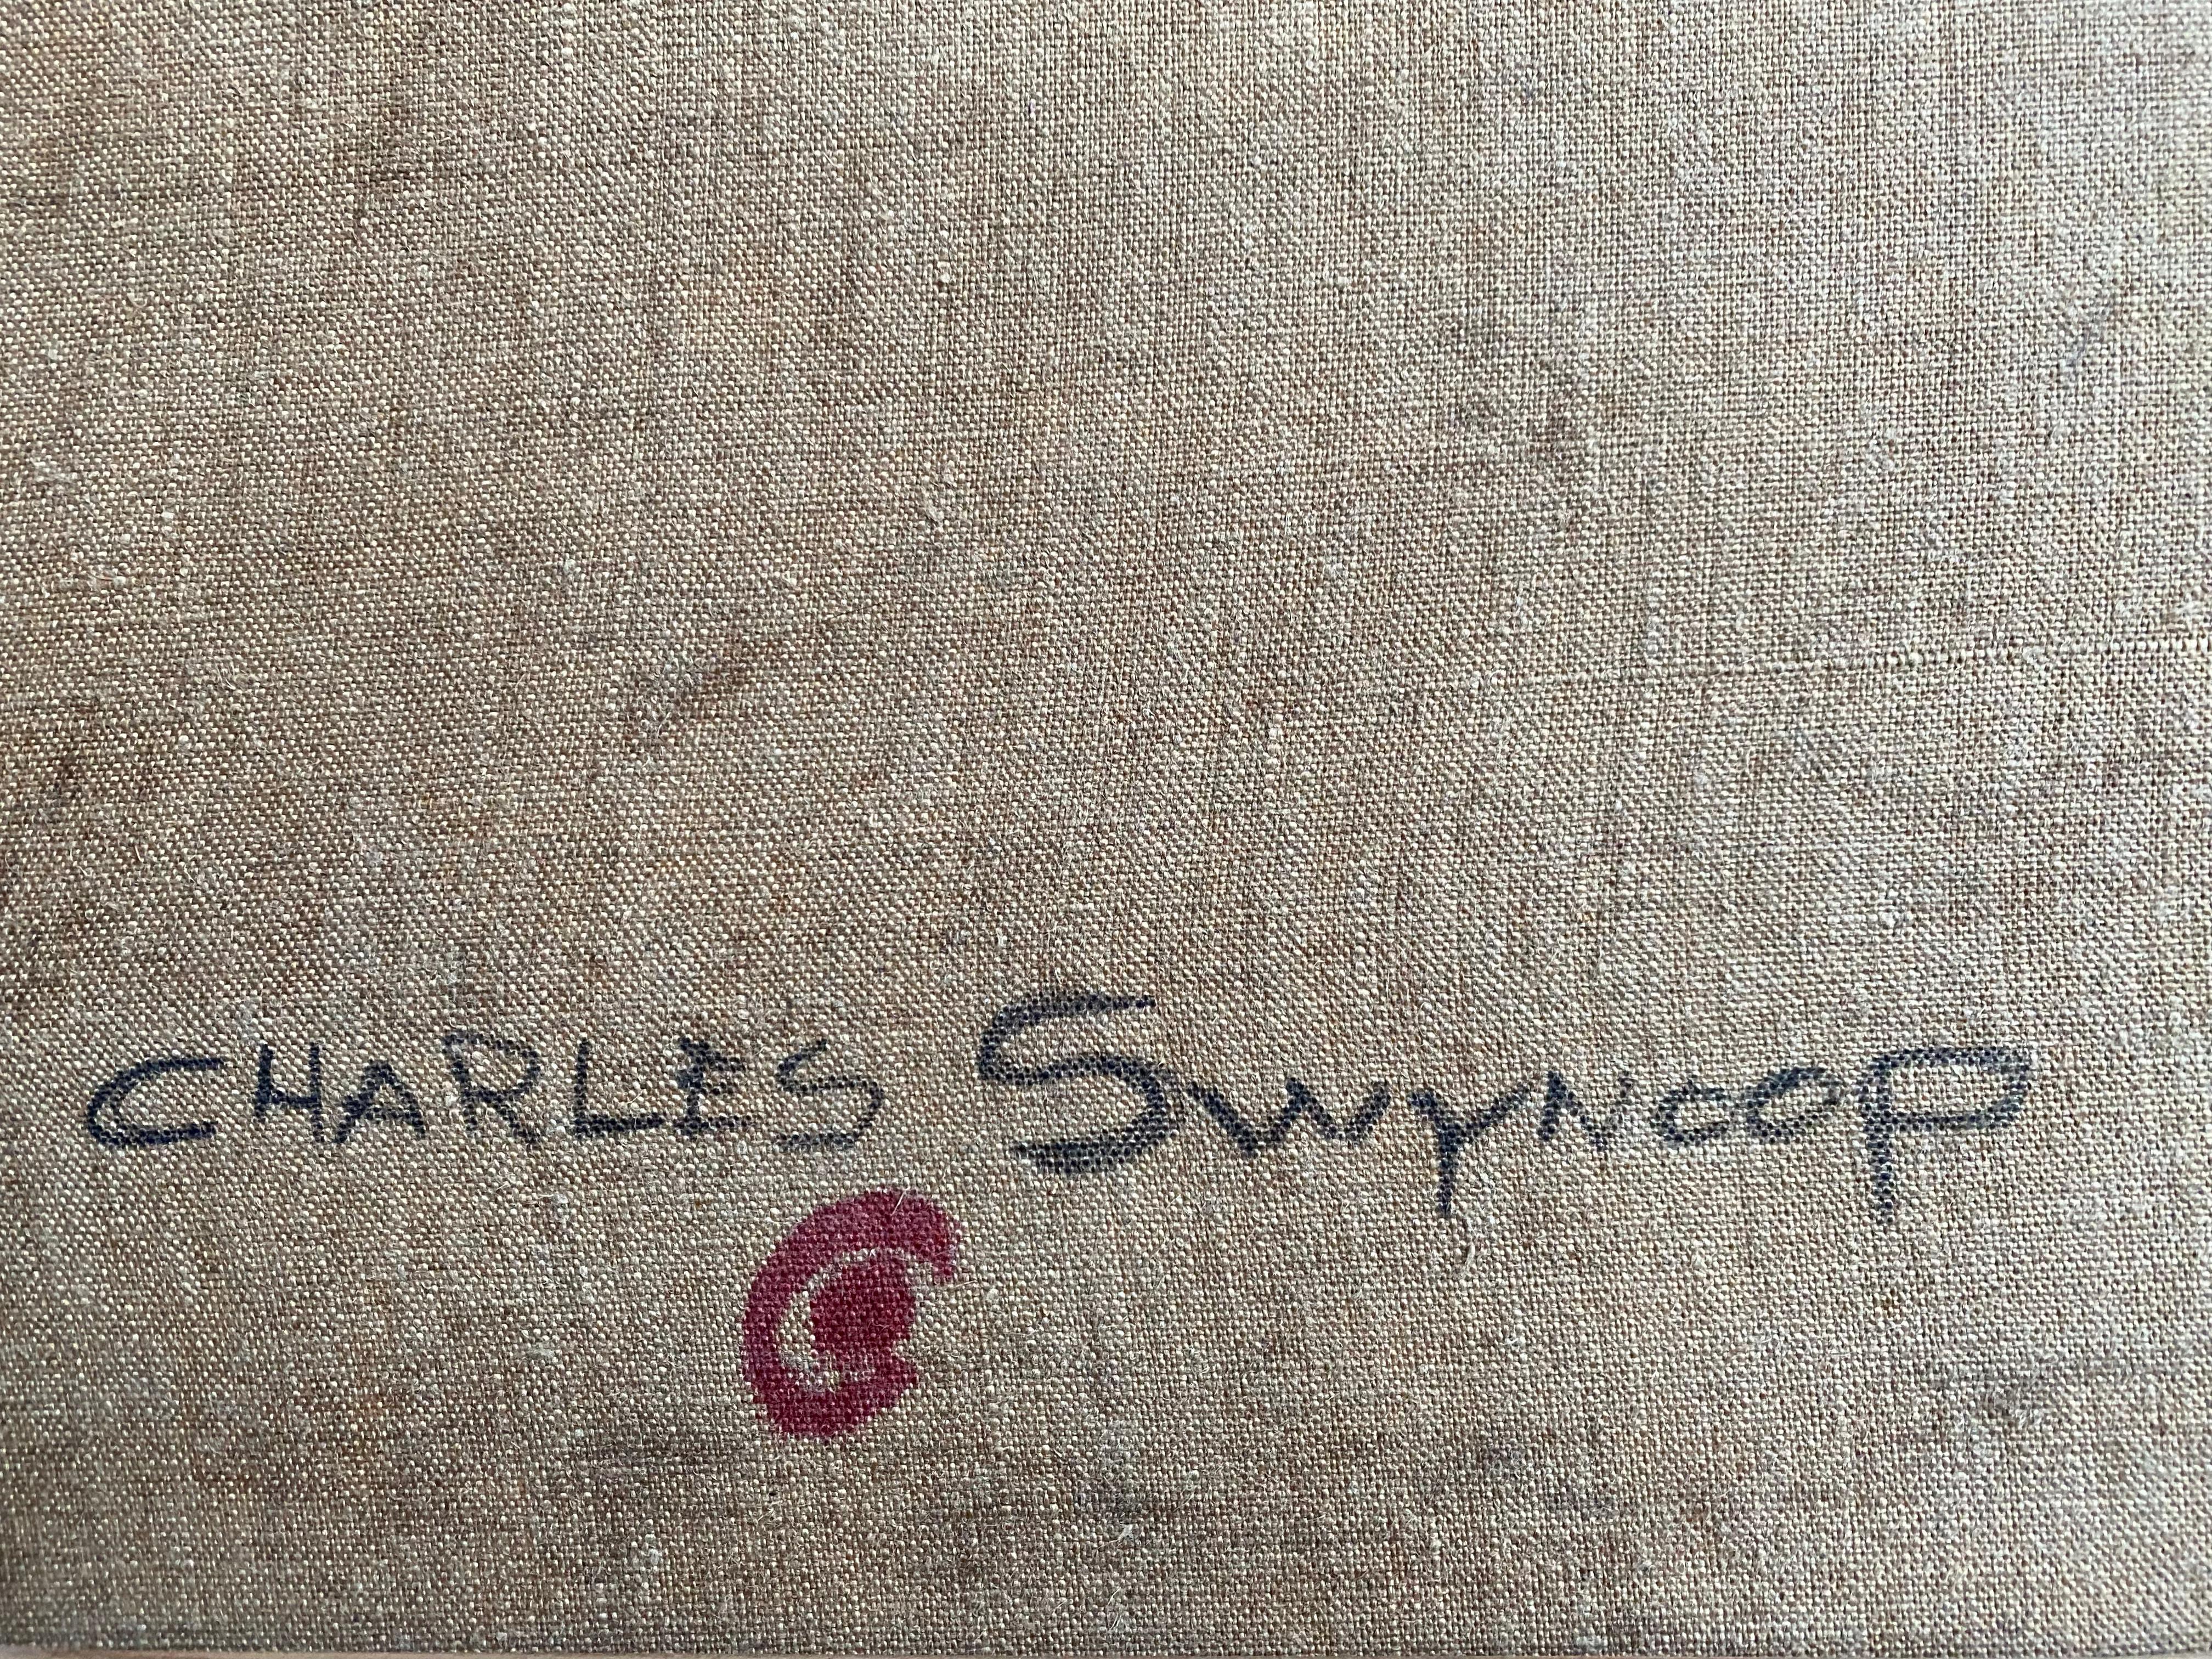 Charles Swyncop, Bruxelles 1895 - 1970, peintre belge 